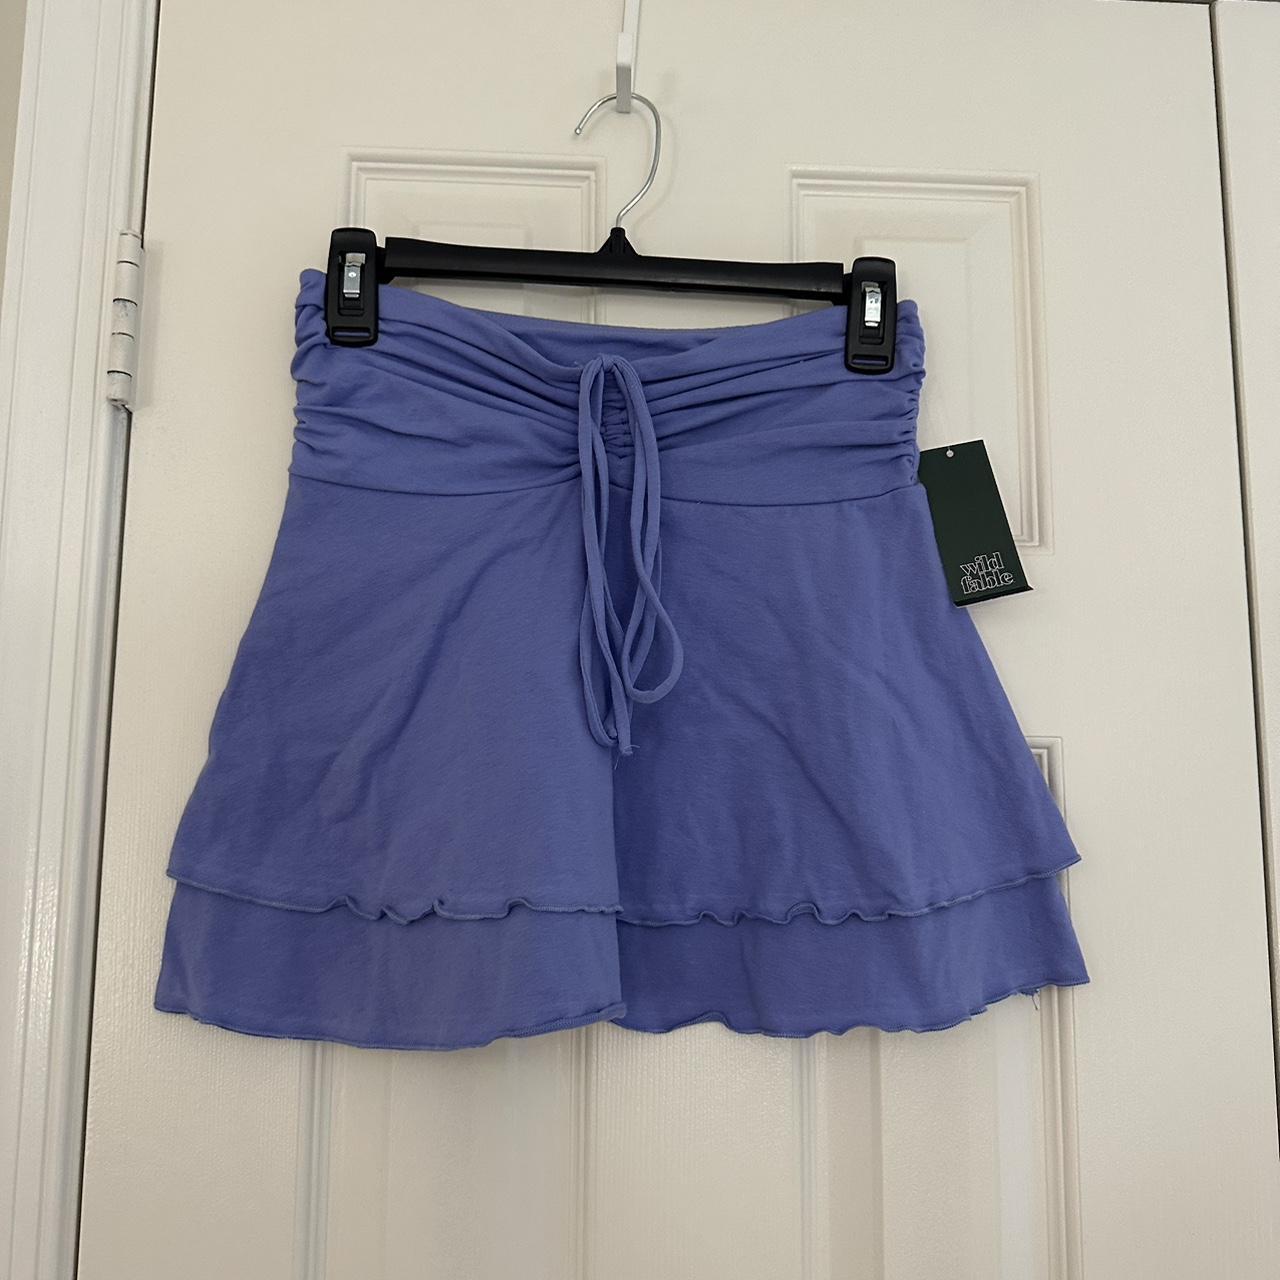 target purple y2k skirt - Depop